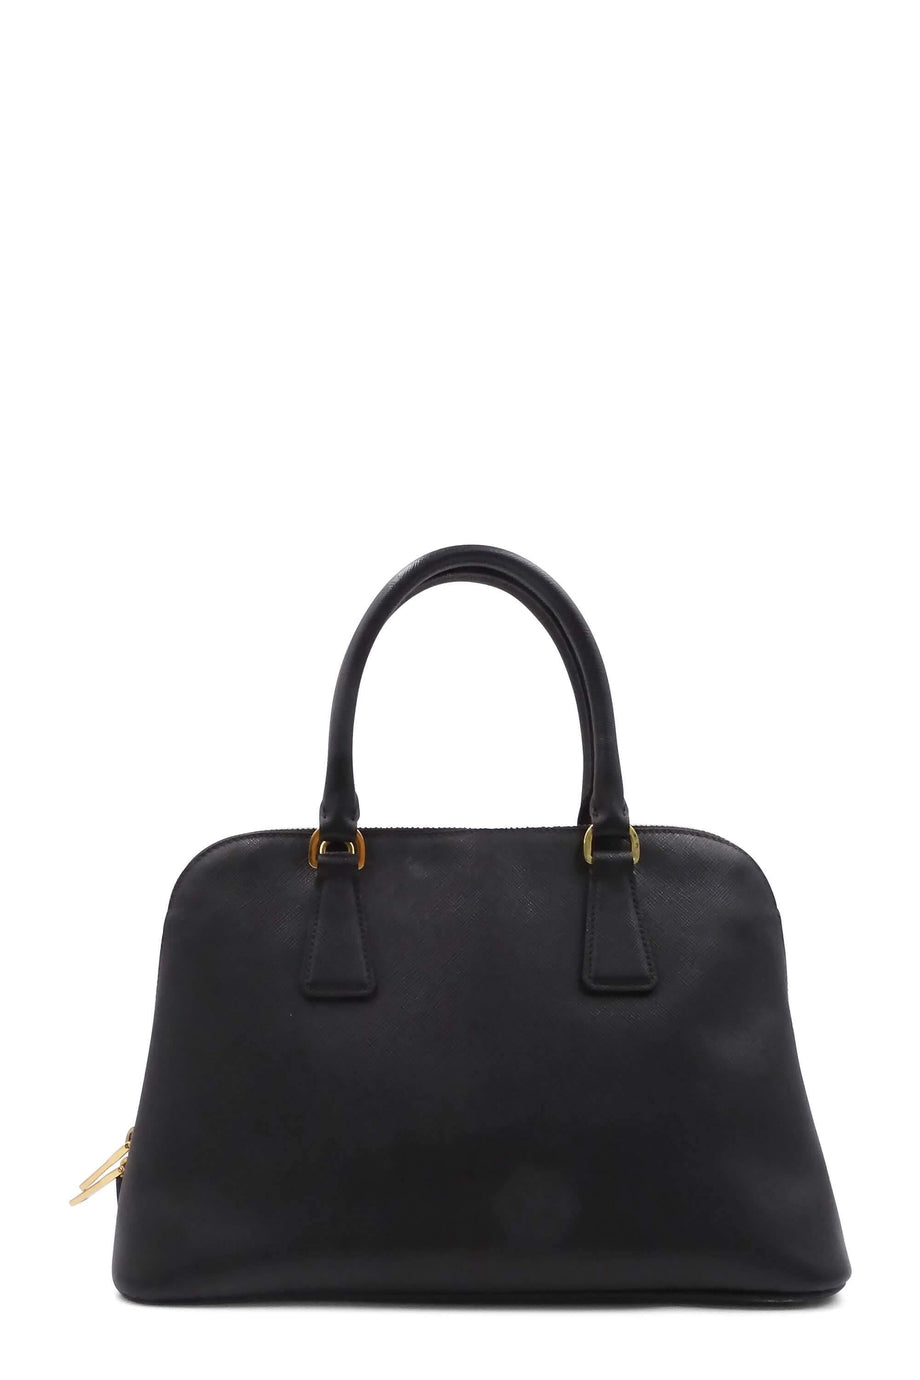 Prada Black Saffiano Lux Leather Large Promenade Bag Prada | The Luxury  Closet